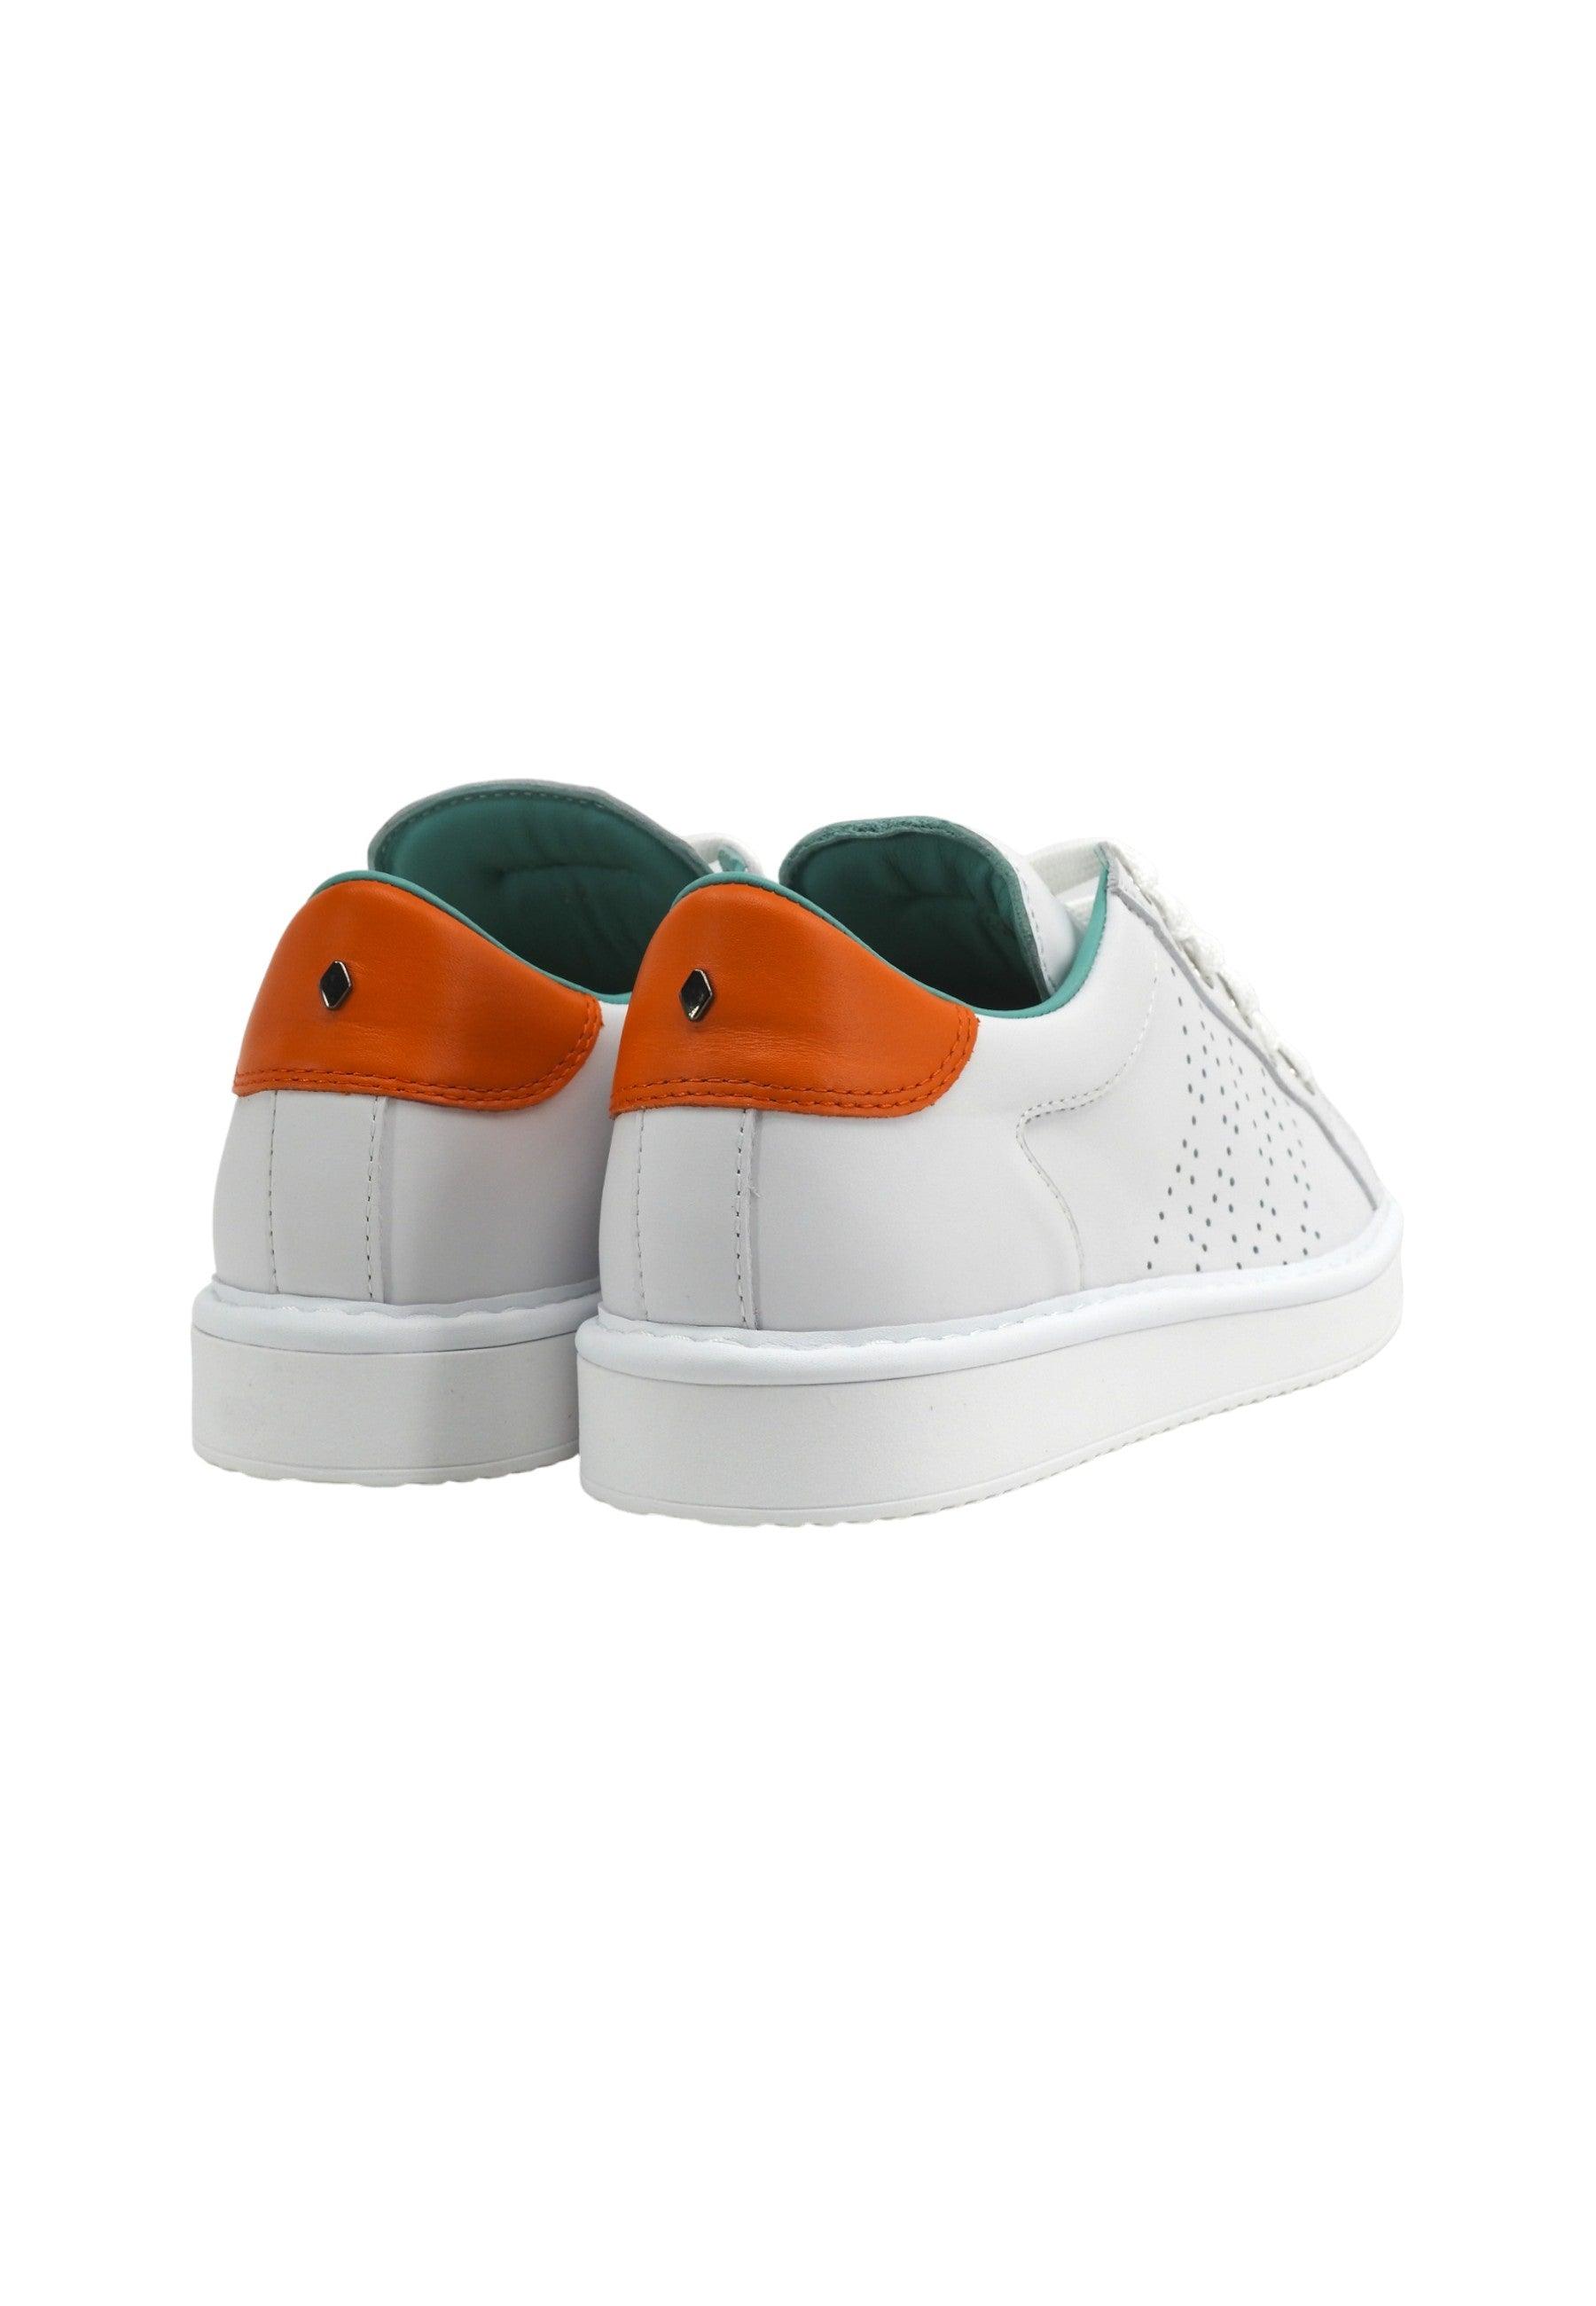 PANCHIC Sneaker Uomo White Orange P01M013-00860033 - Sandrini Calzature e Abbigliamento